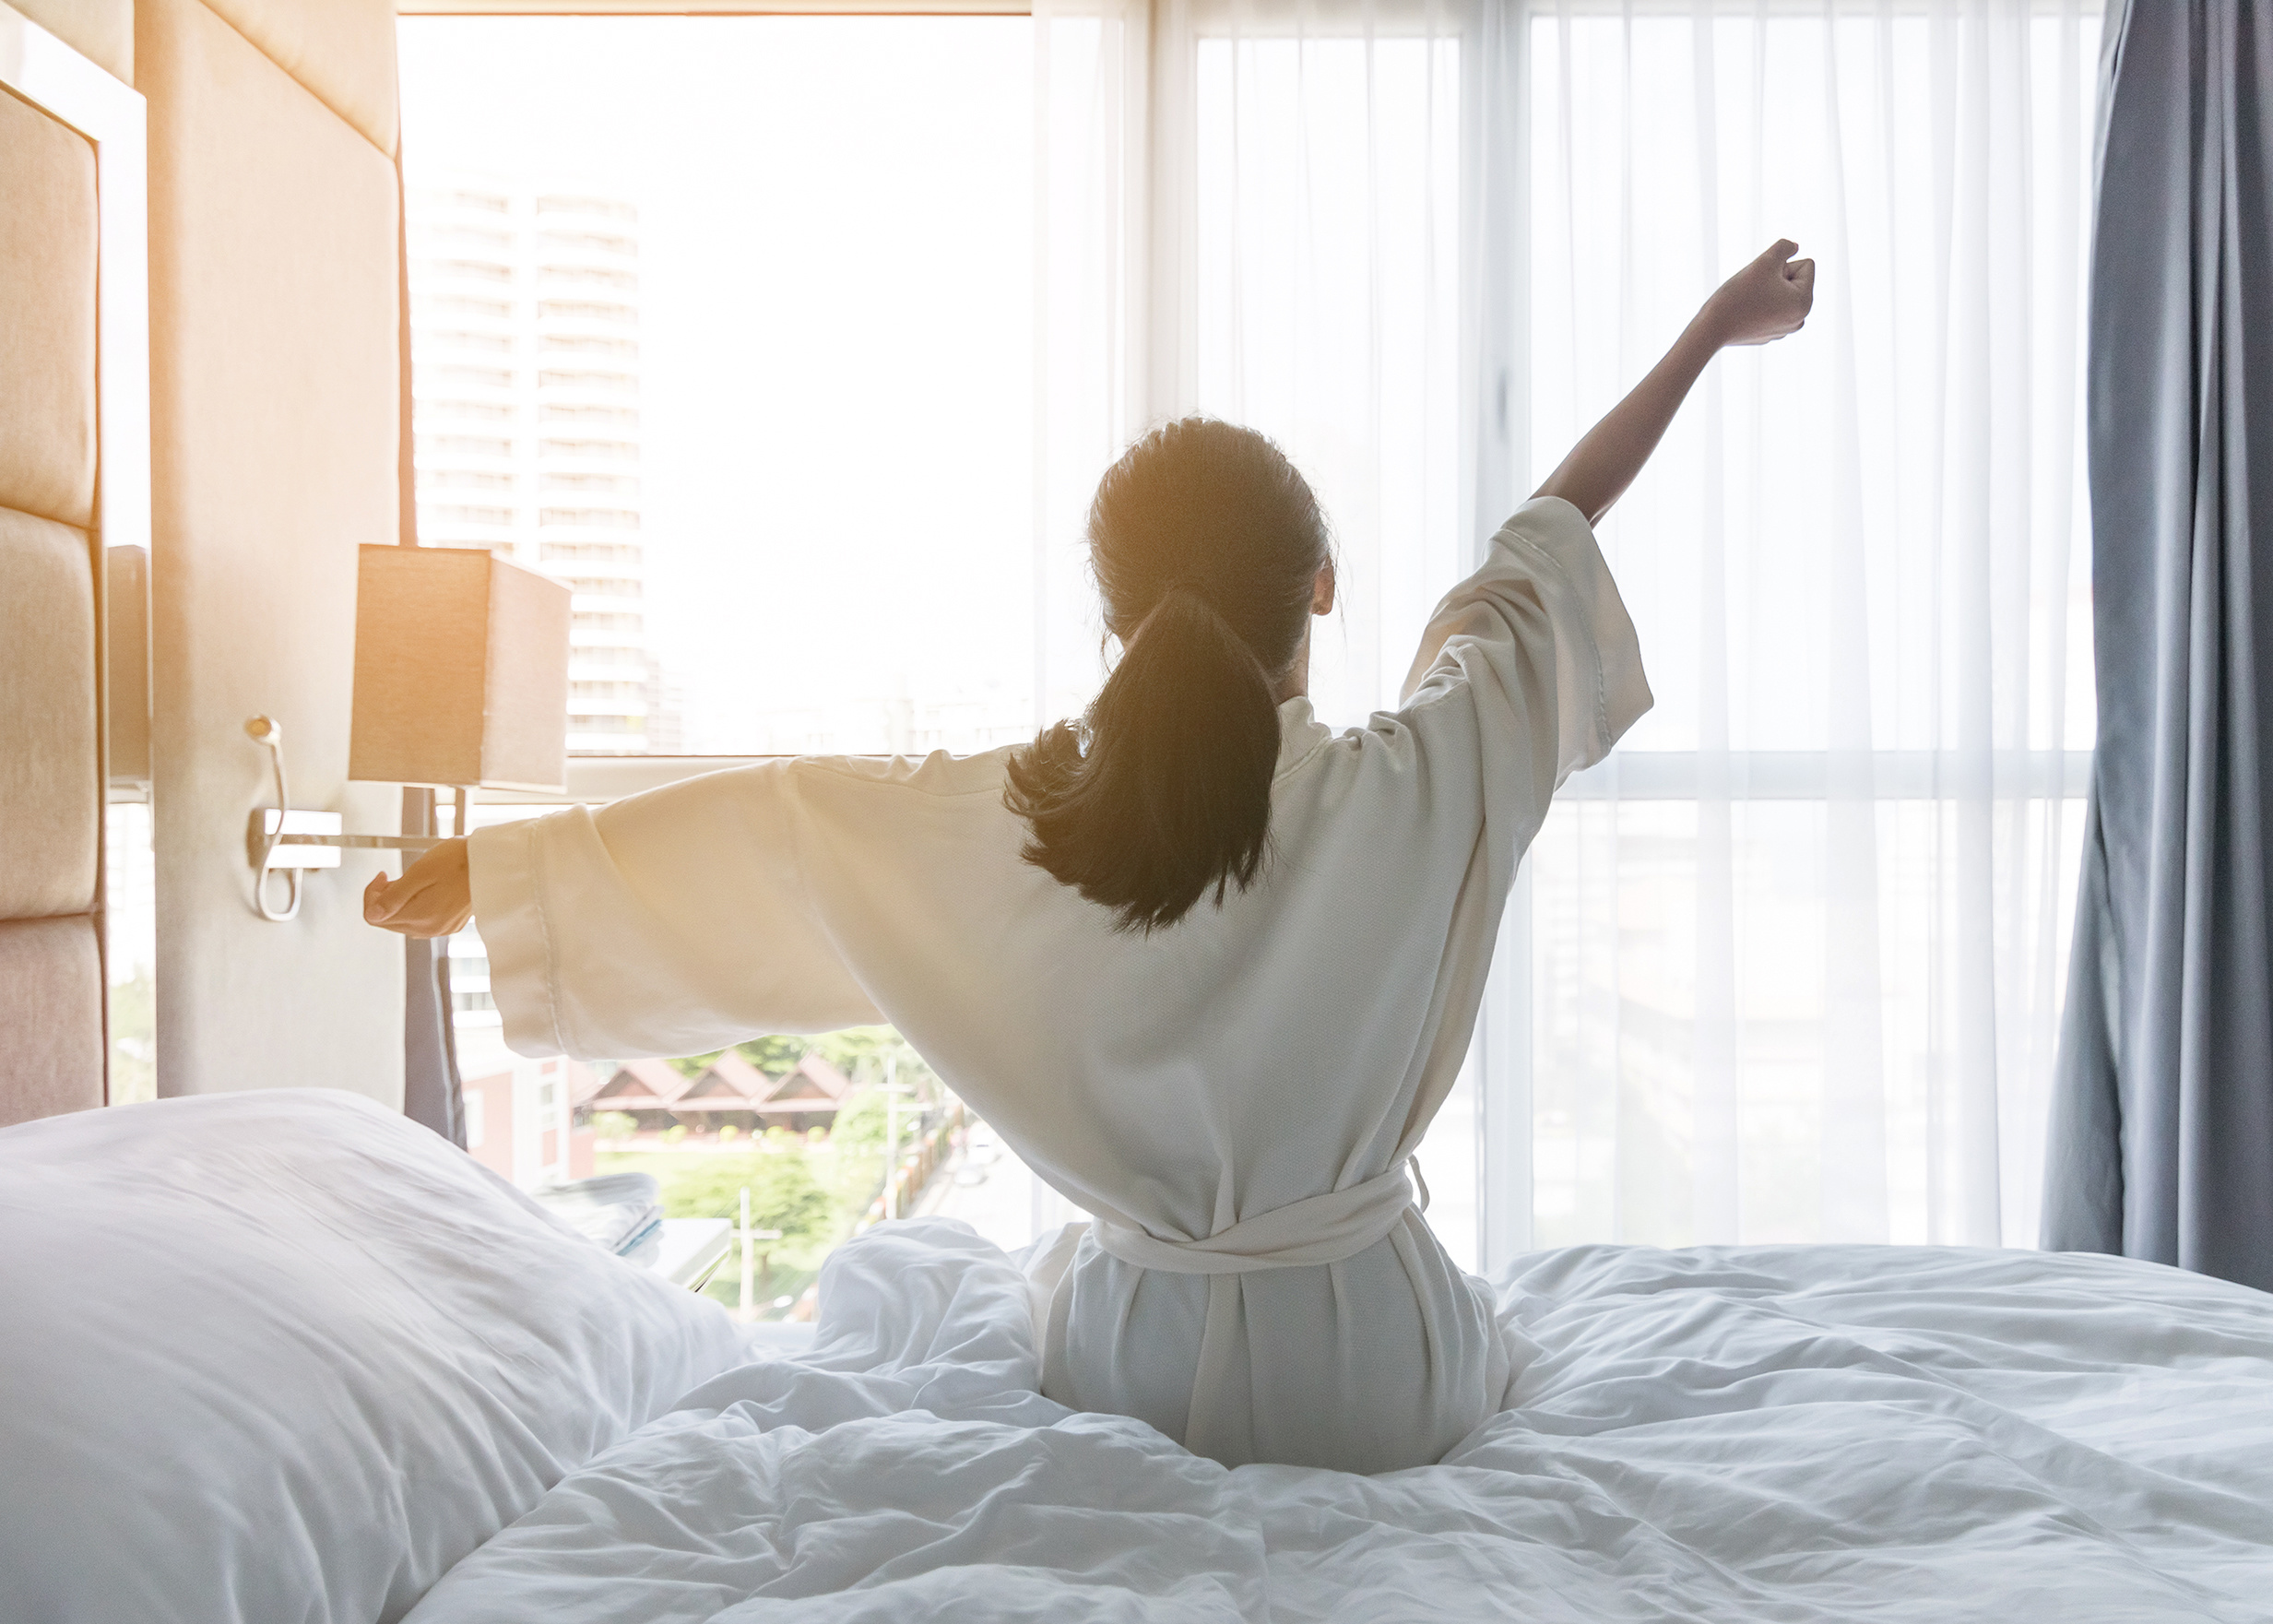 Le sommeil profond contribue à réduire l'anxiété, du jour au lendemain, en réorganisant les connexions dans le cerveau. 